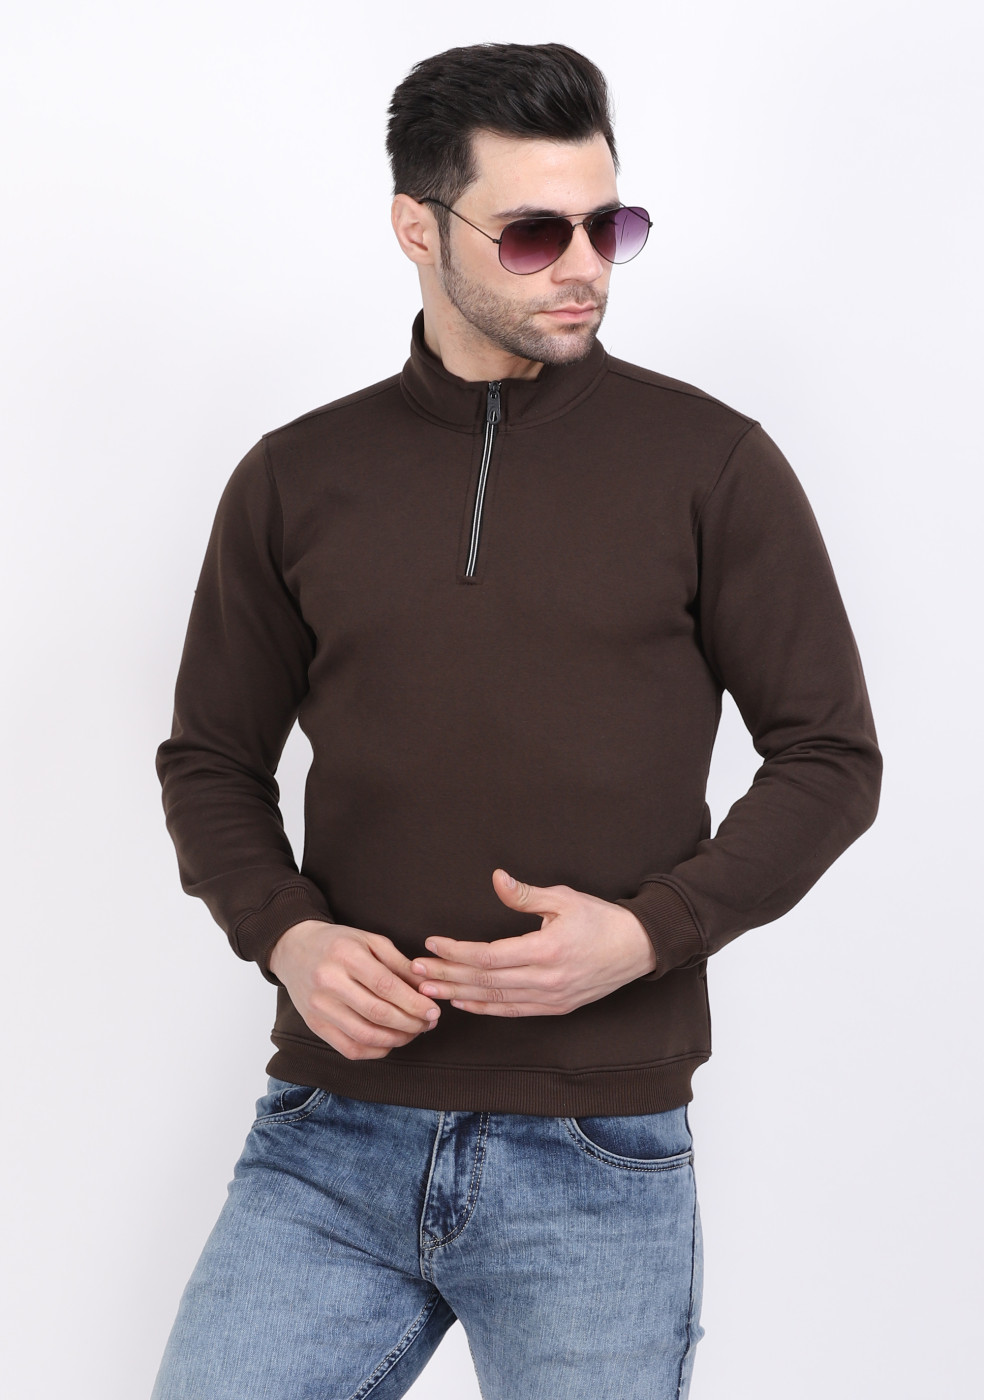 HUKH Half Zip Long Sleeve Dark Olive Sweatshirt For Men